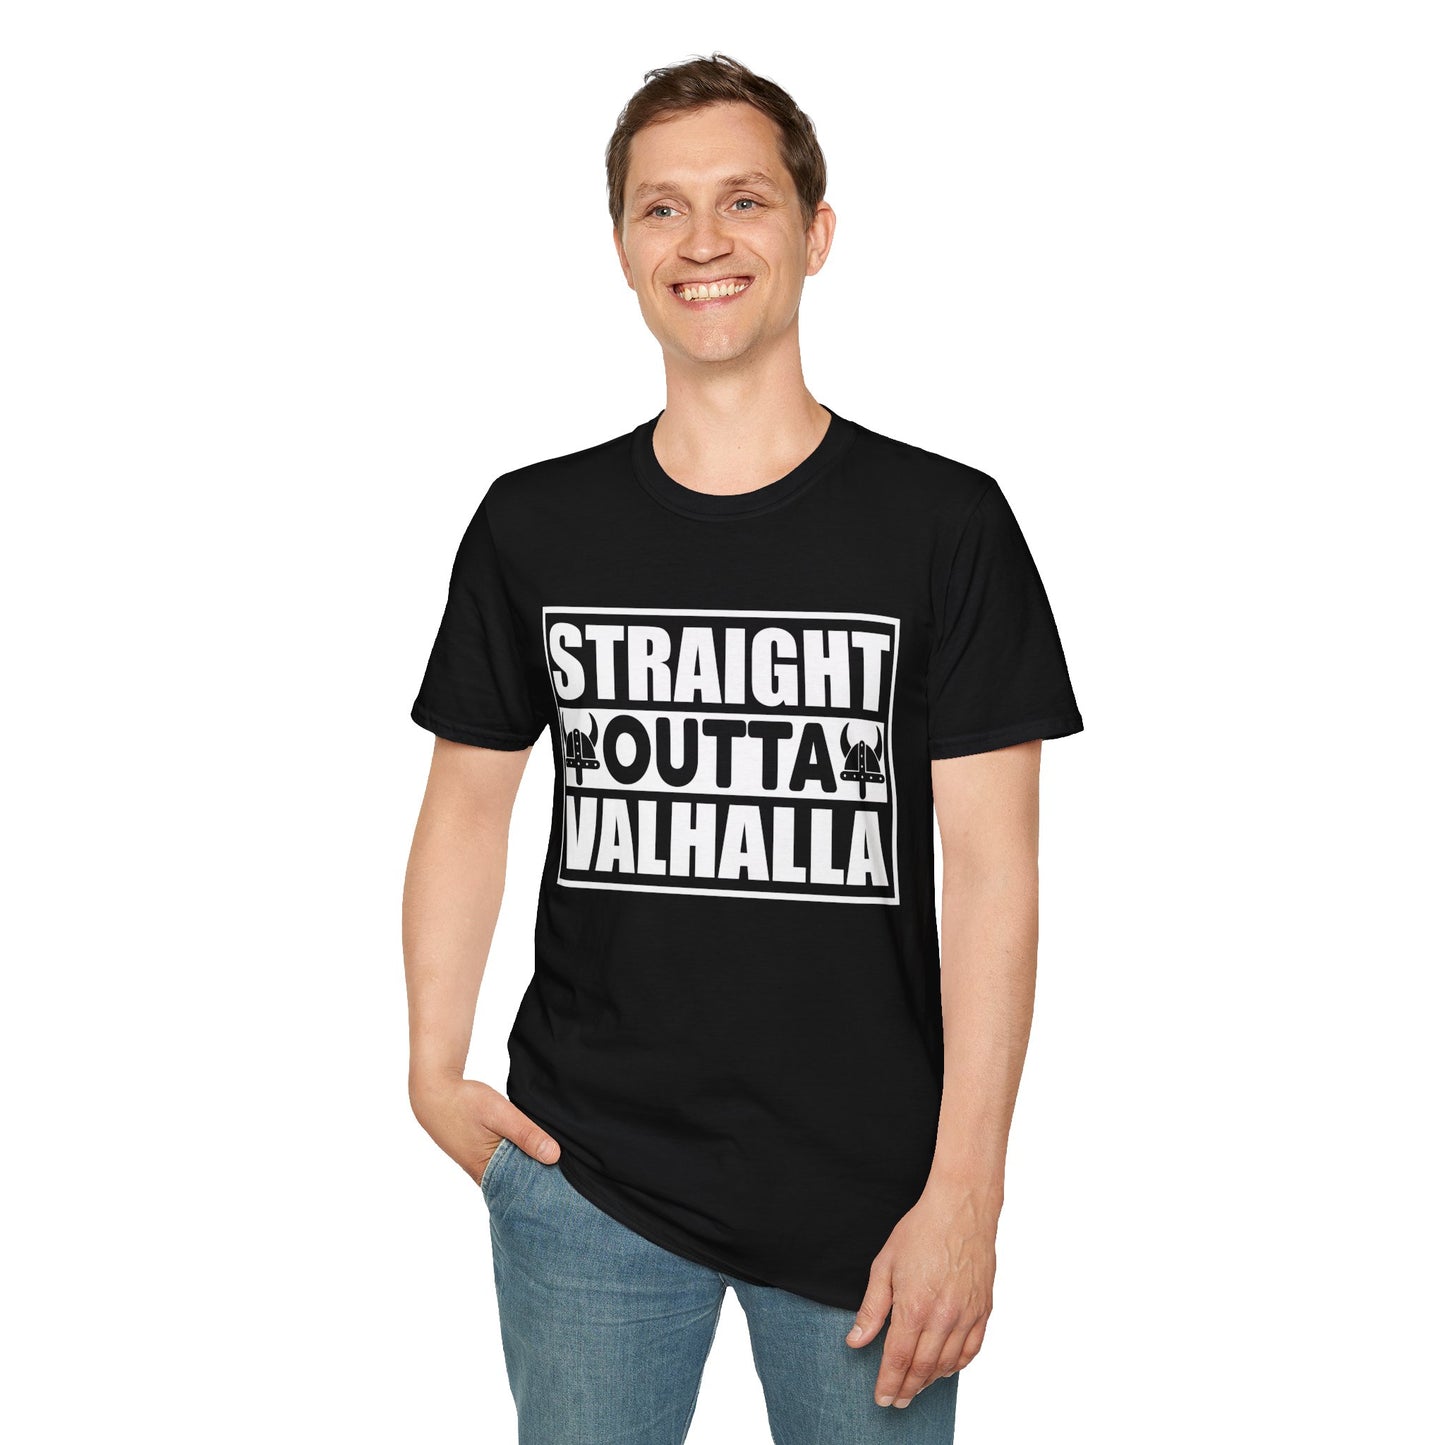 Straight Outta Valhalla T-Shirt